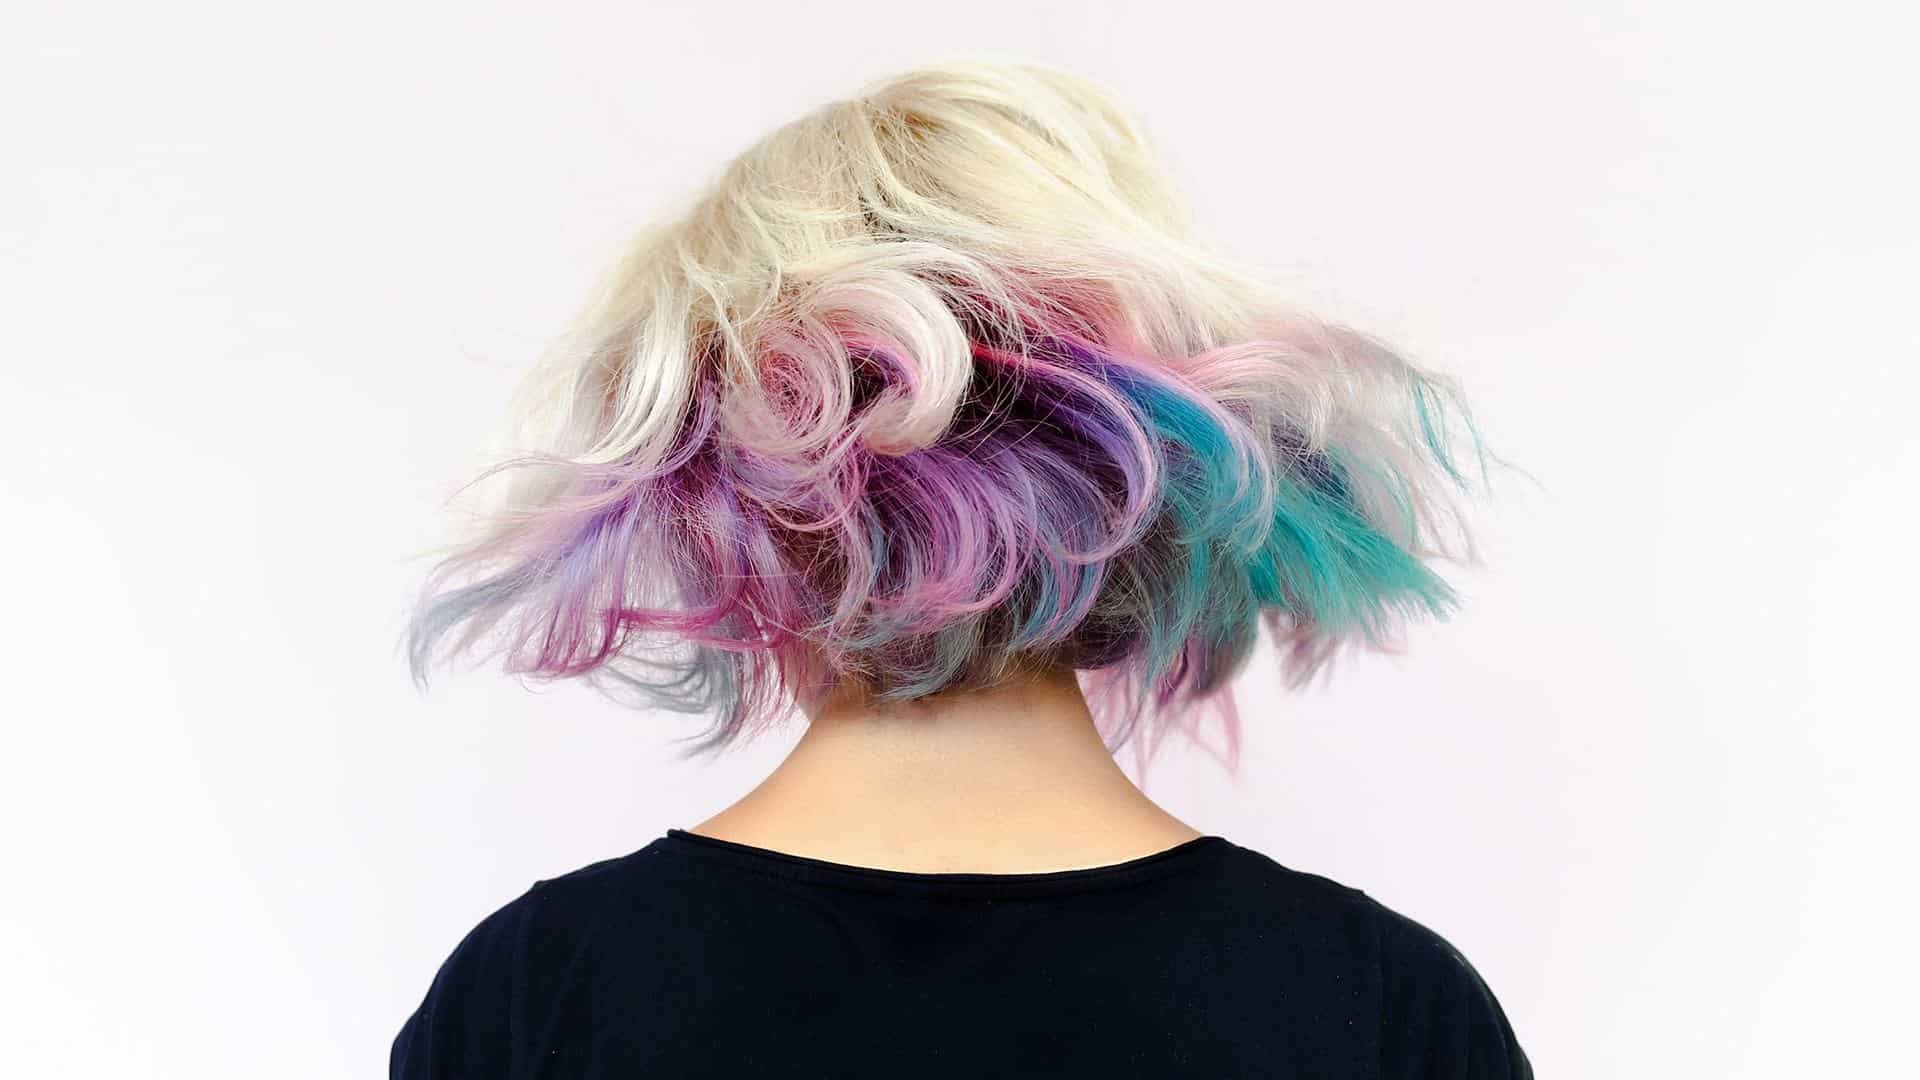 Loreal Paris Article The Underlights Hair Trend Features A Secret Pop Of Color D